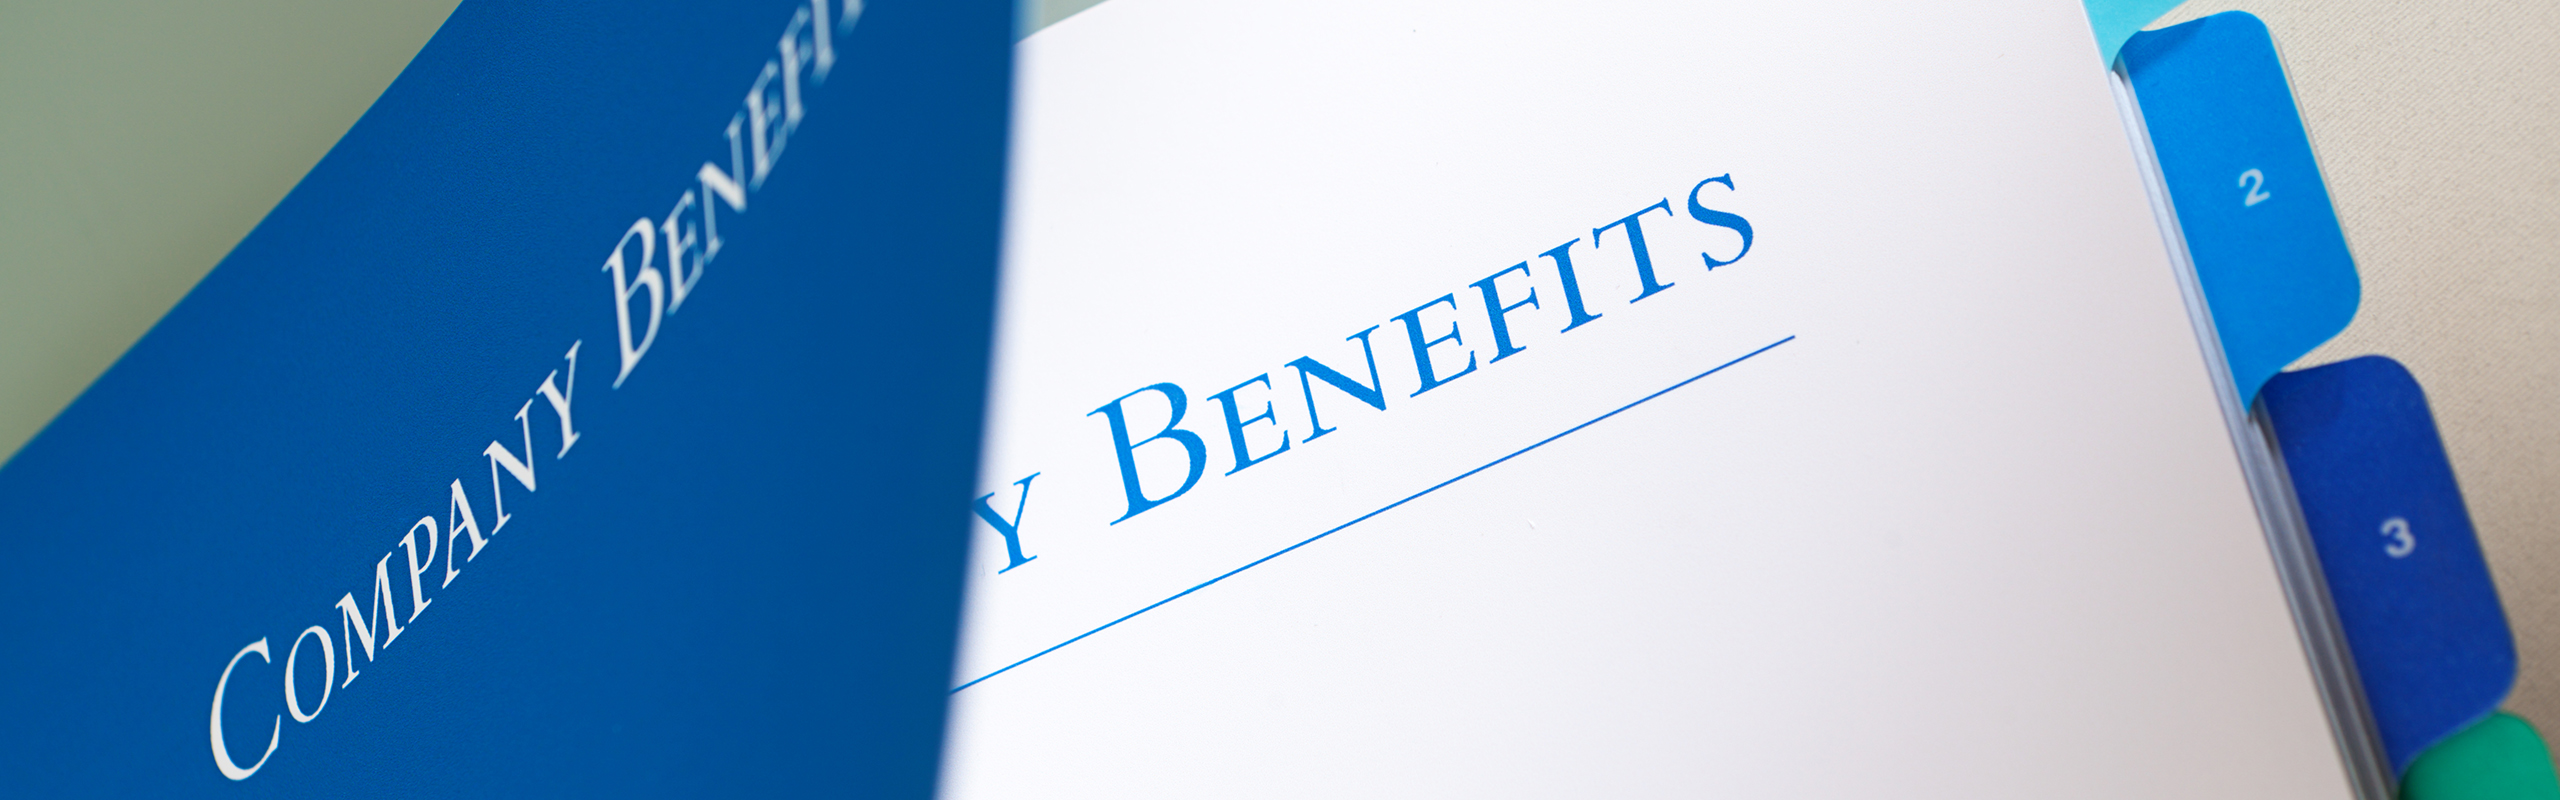 Voluntary employee benefits